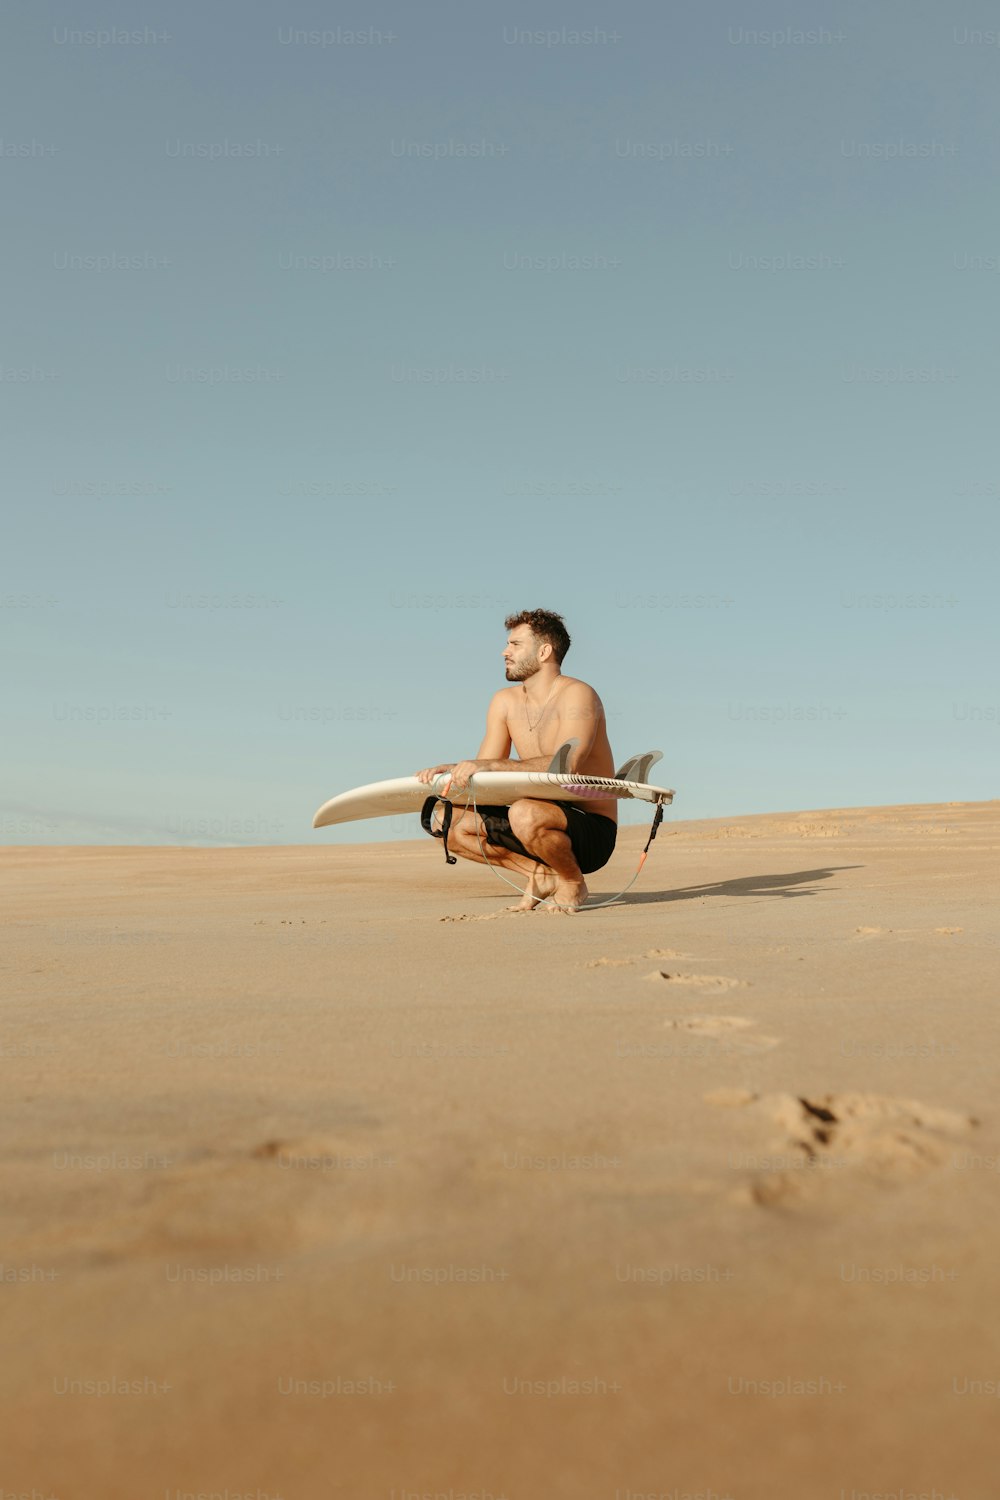 Un uomo inginocchiato mentre tiene una tavola da surf